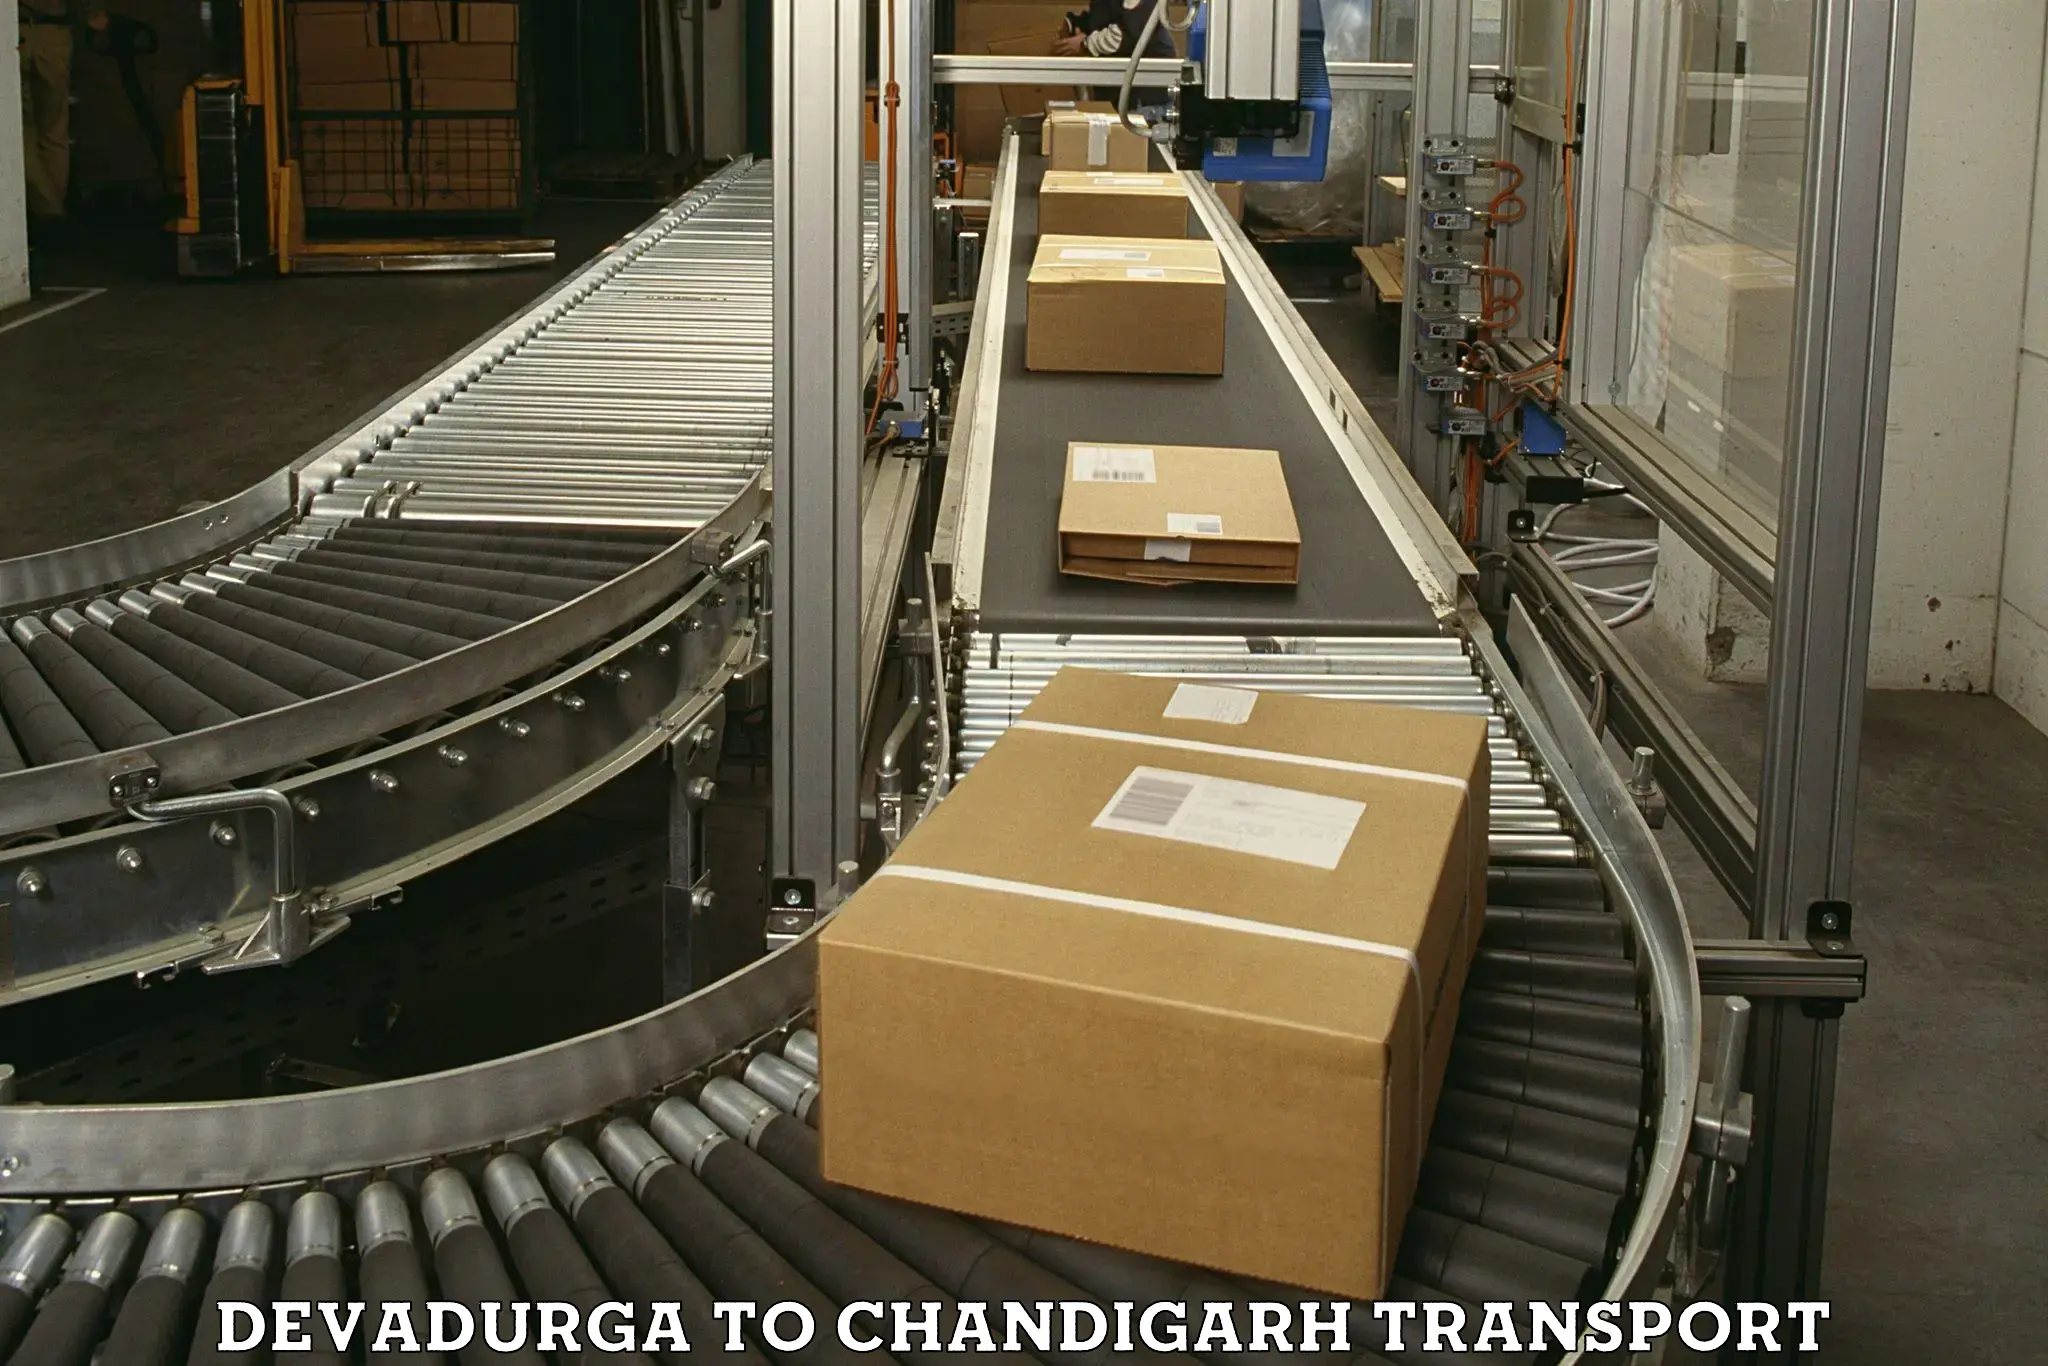 Luggage transport services Devadurga to Chandigarh